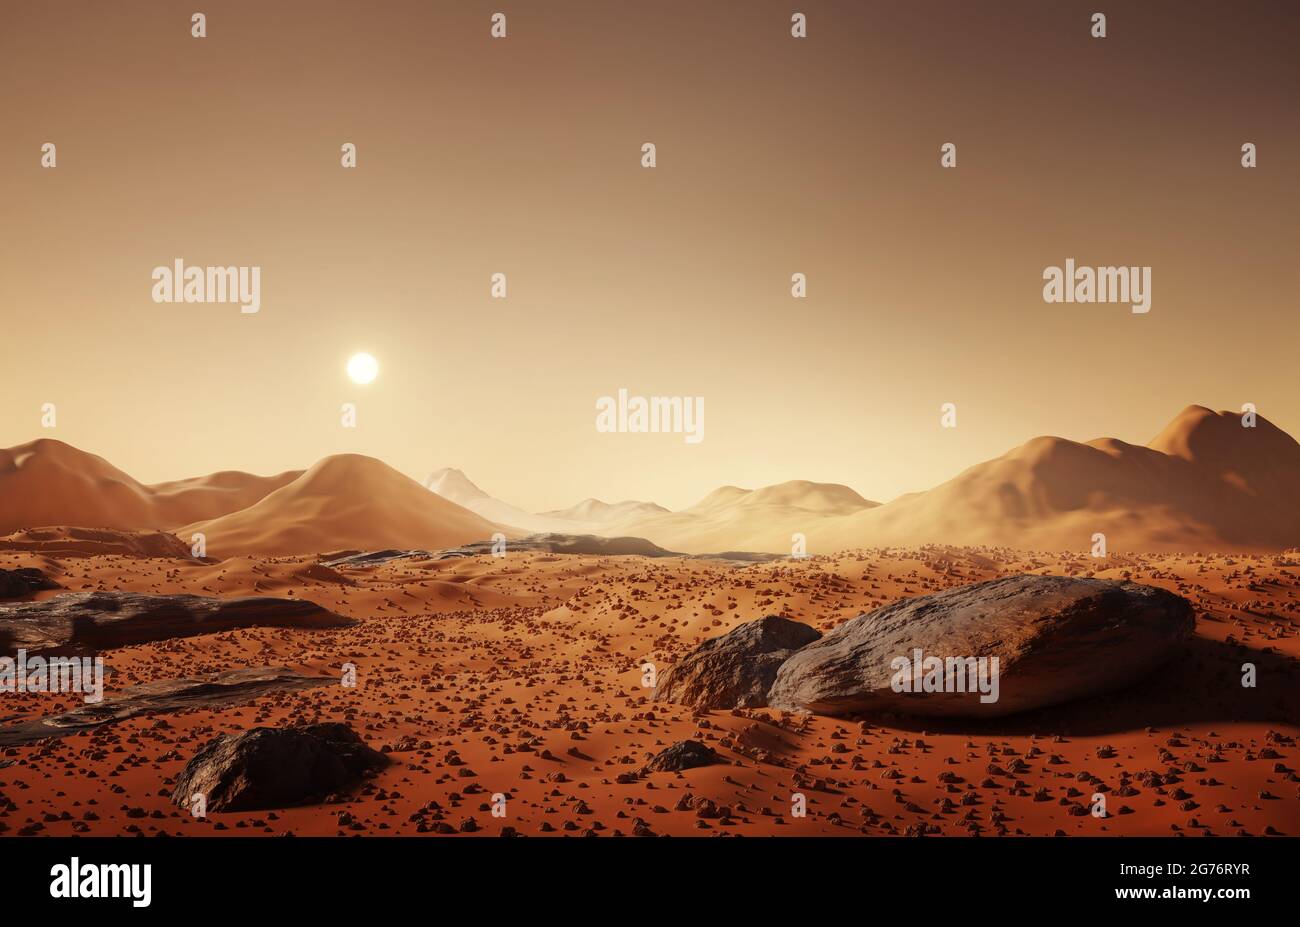 Le paysage martien, les rochers dispersés et les montagnes lointaines sur la surface de Mars. Illustration 3D. Banque D'Images